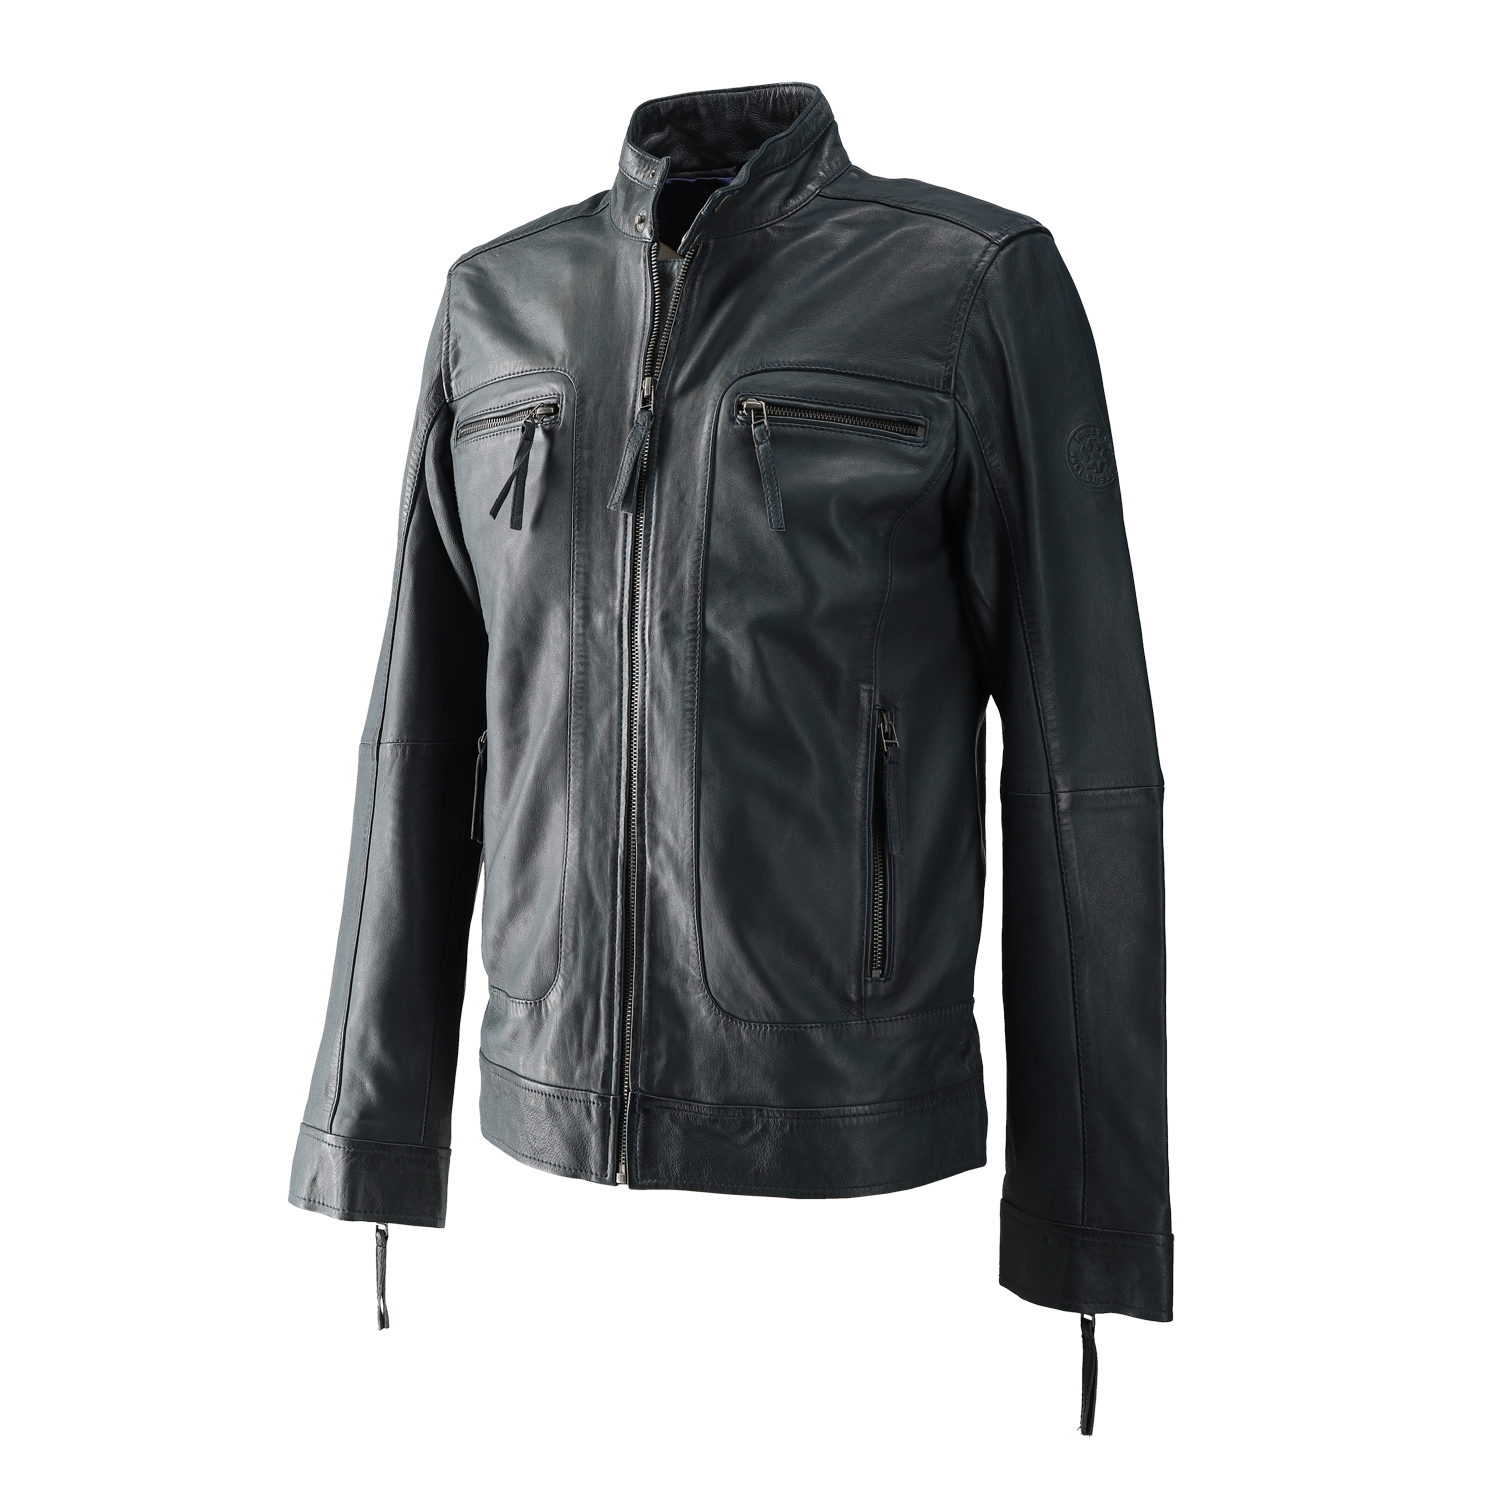 RIDEZ CLUBS JACKET IronBlue RLJ200C Leather Jacket